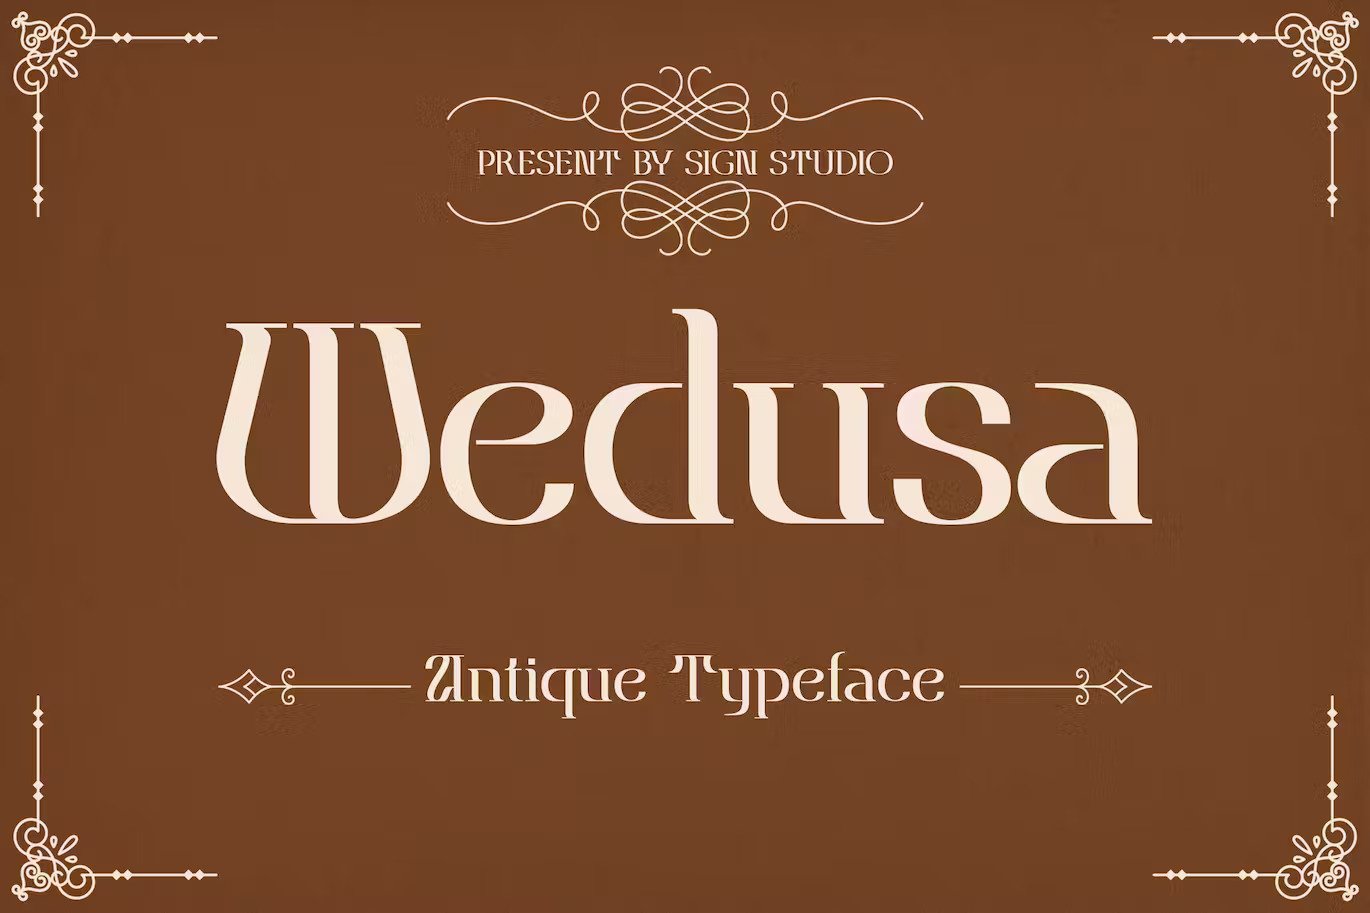 A unique antique typeface